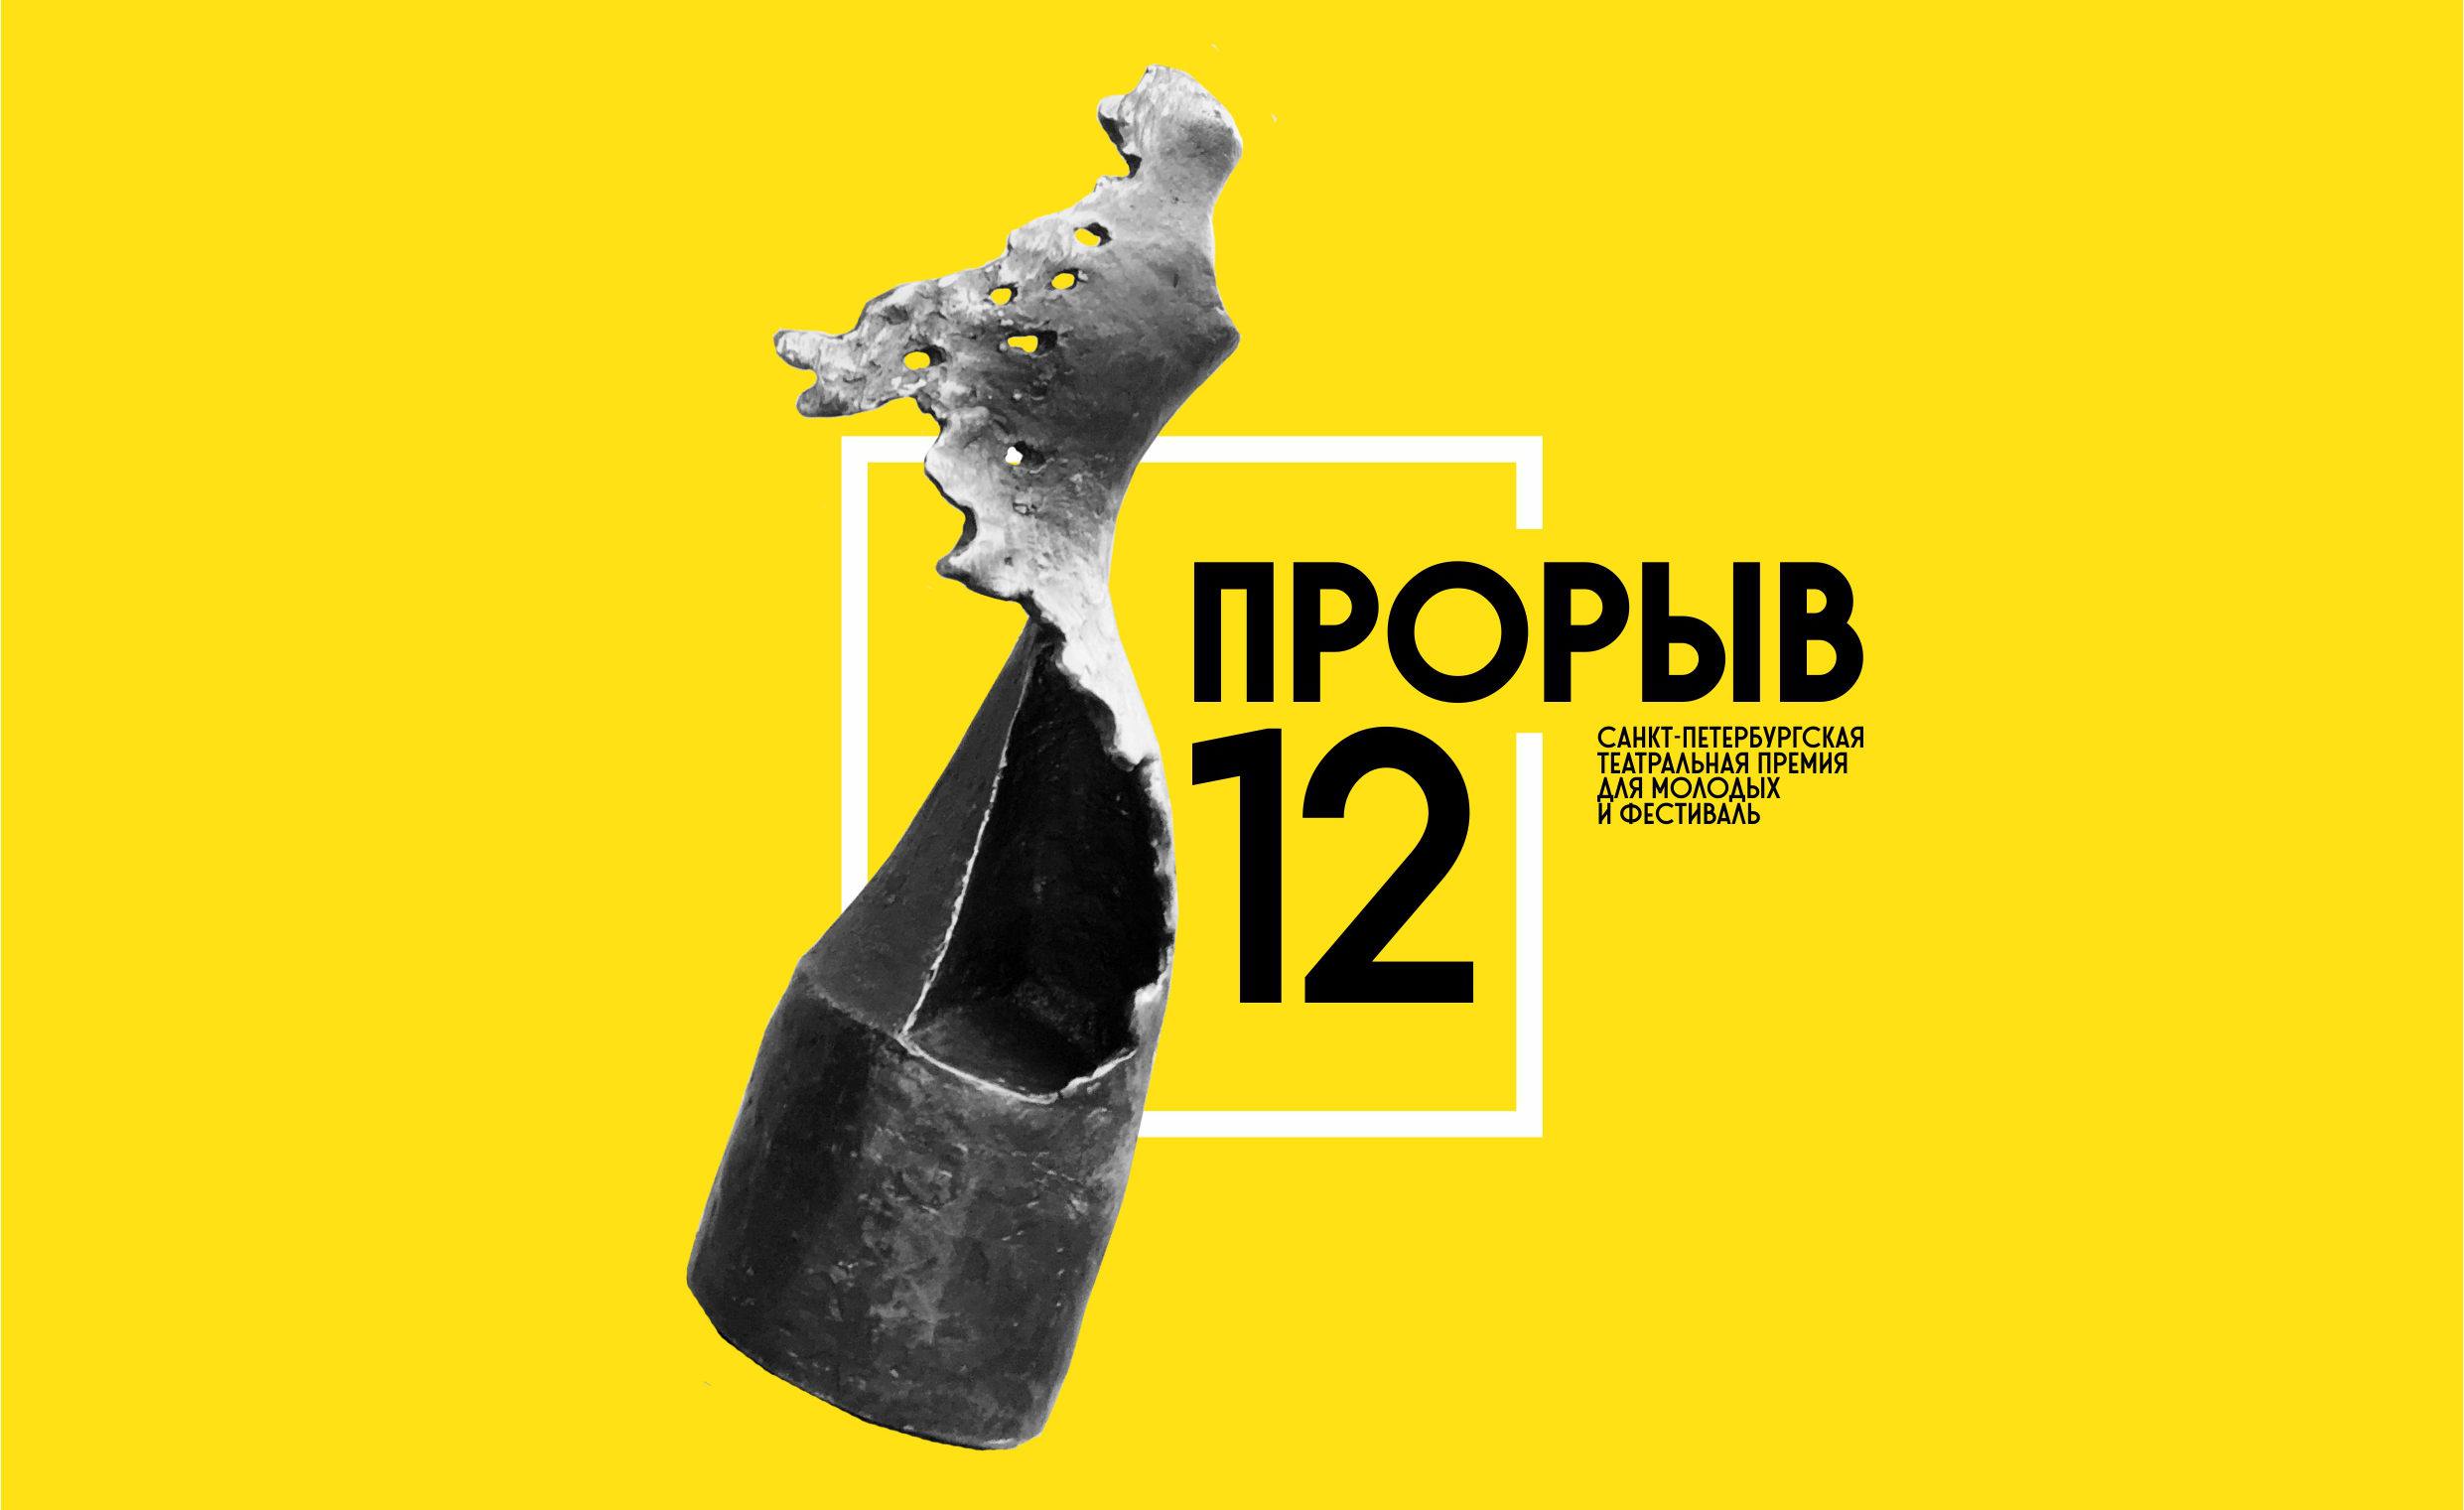 Логотип "Прорыва-2021" © пресс-служба премии